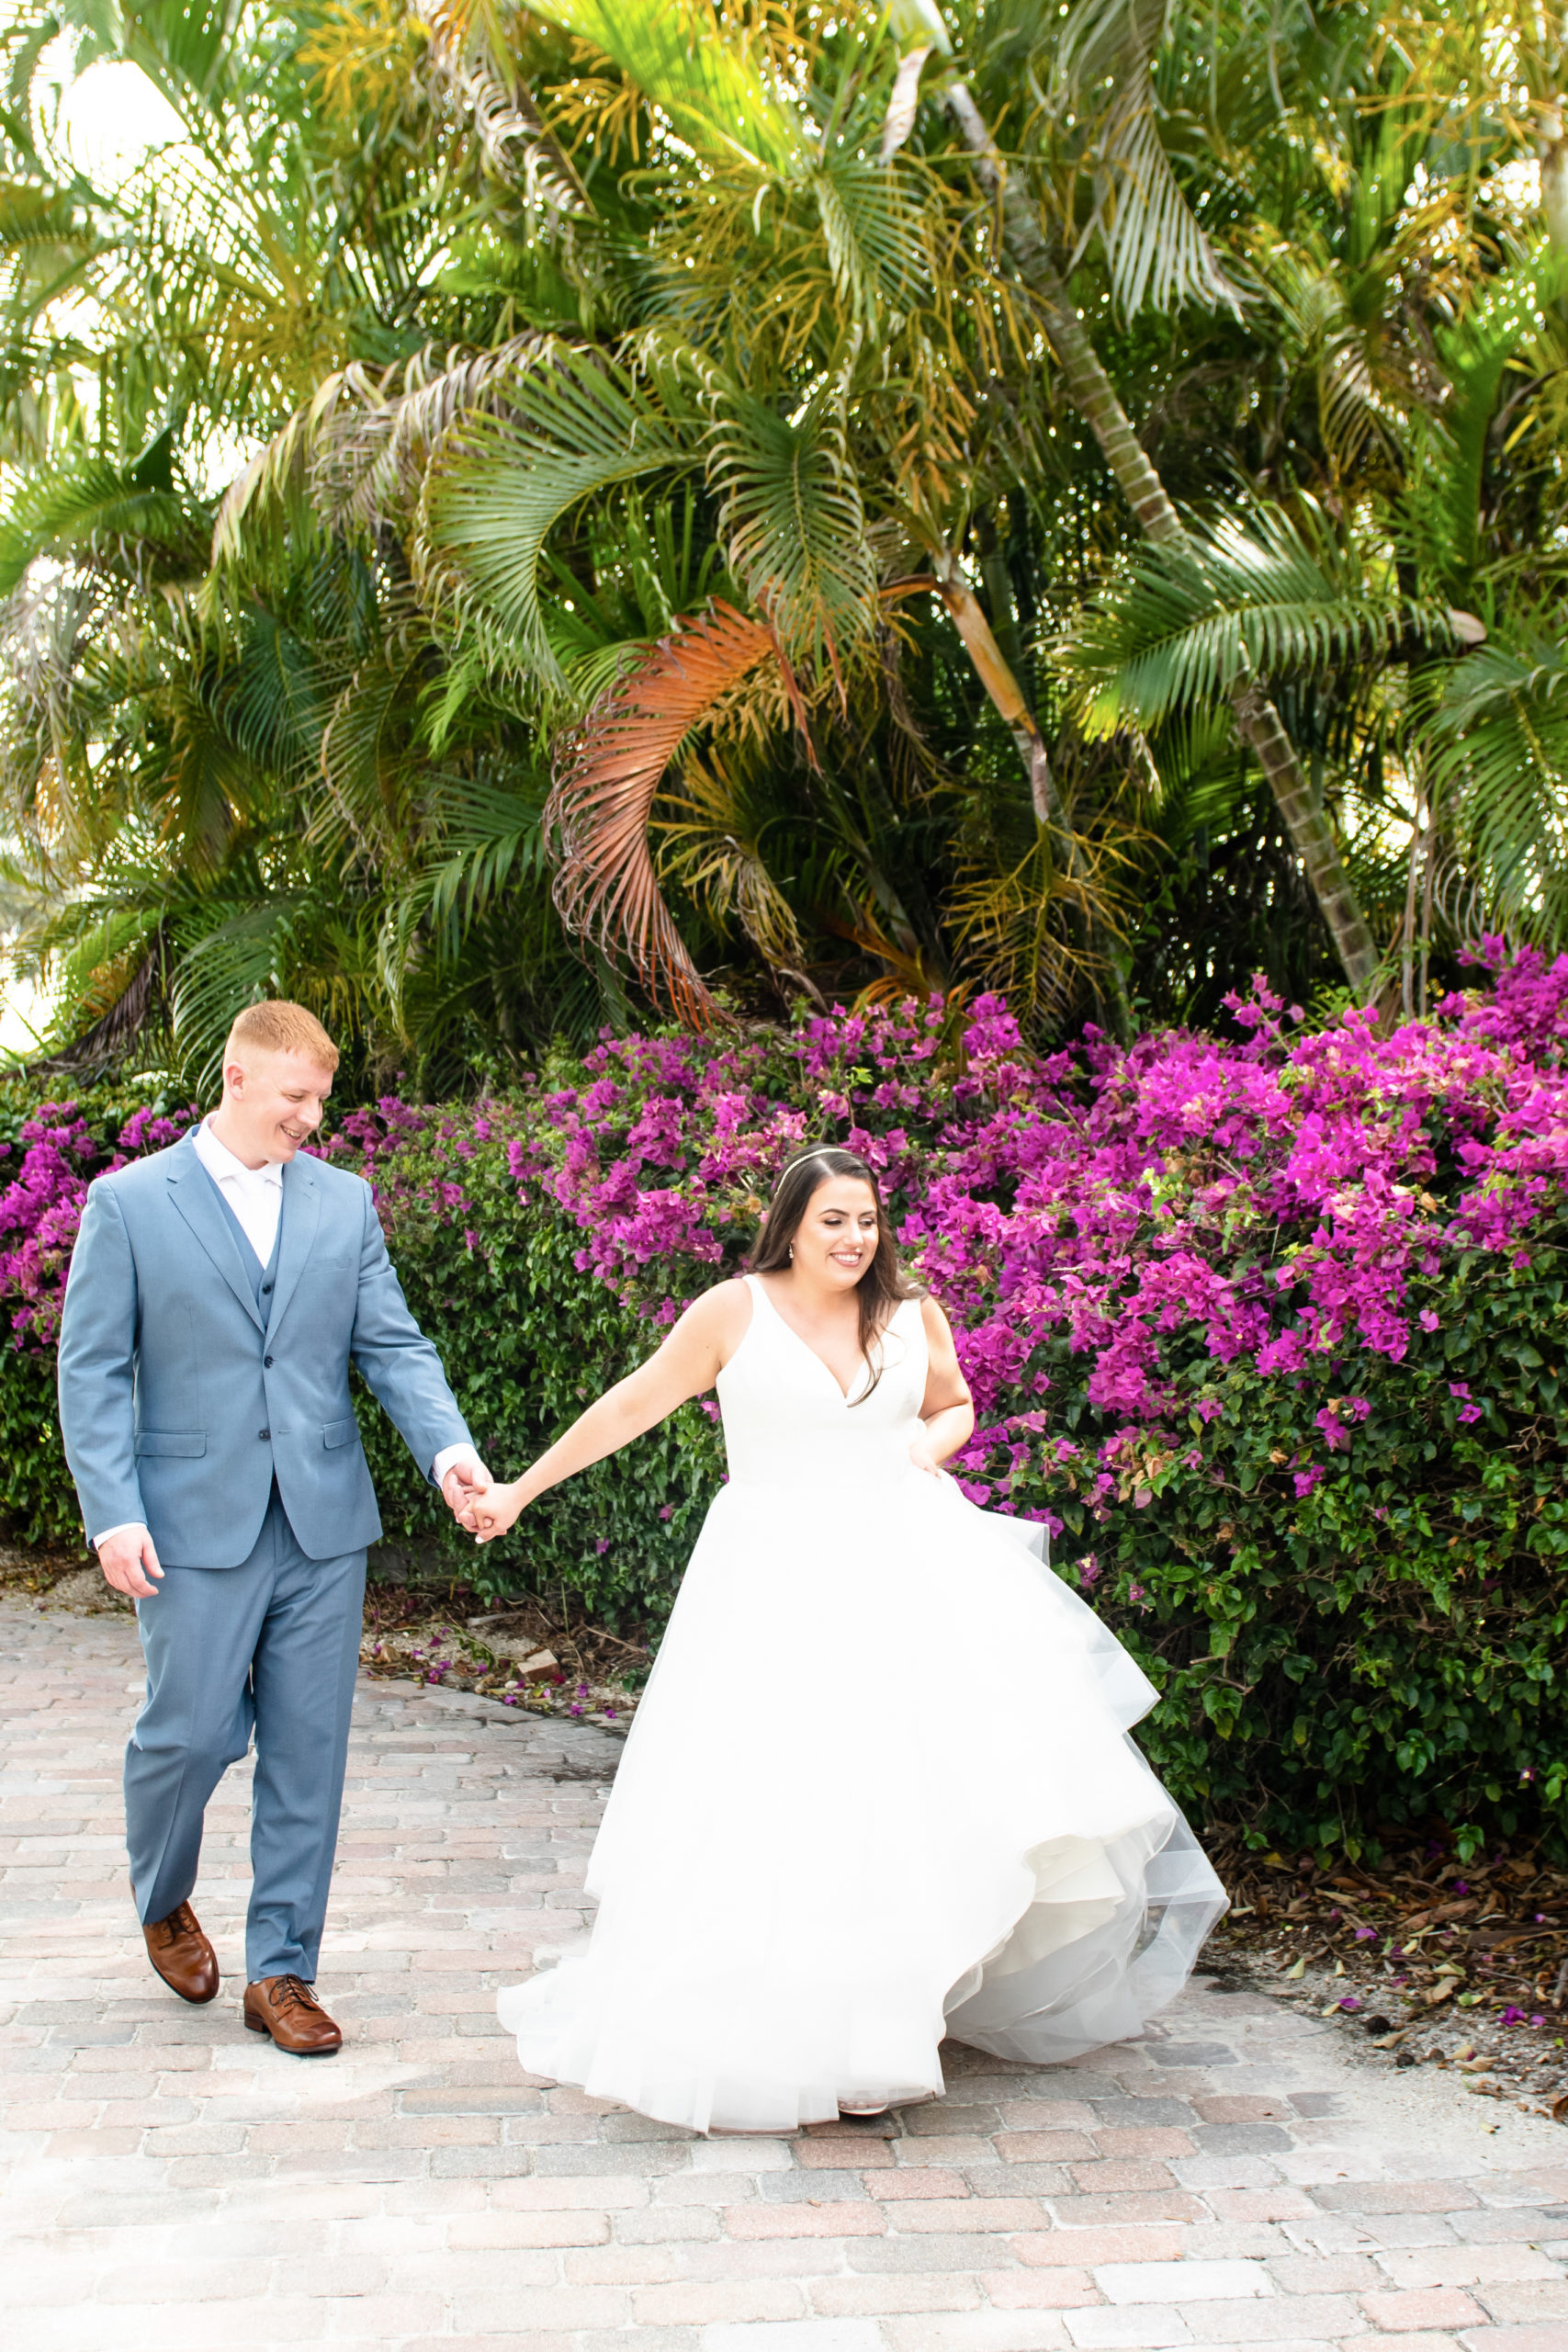 Bride and groom walking by flowers